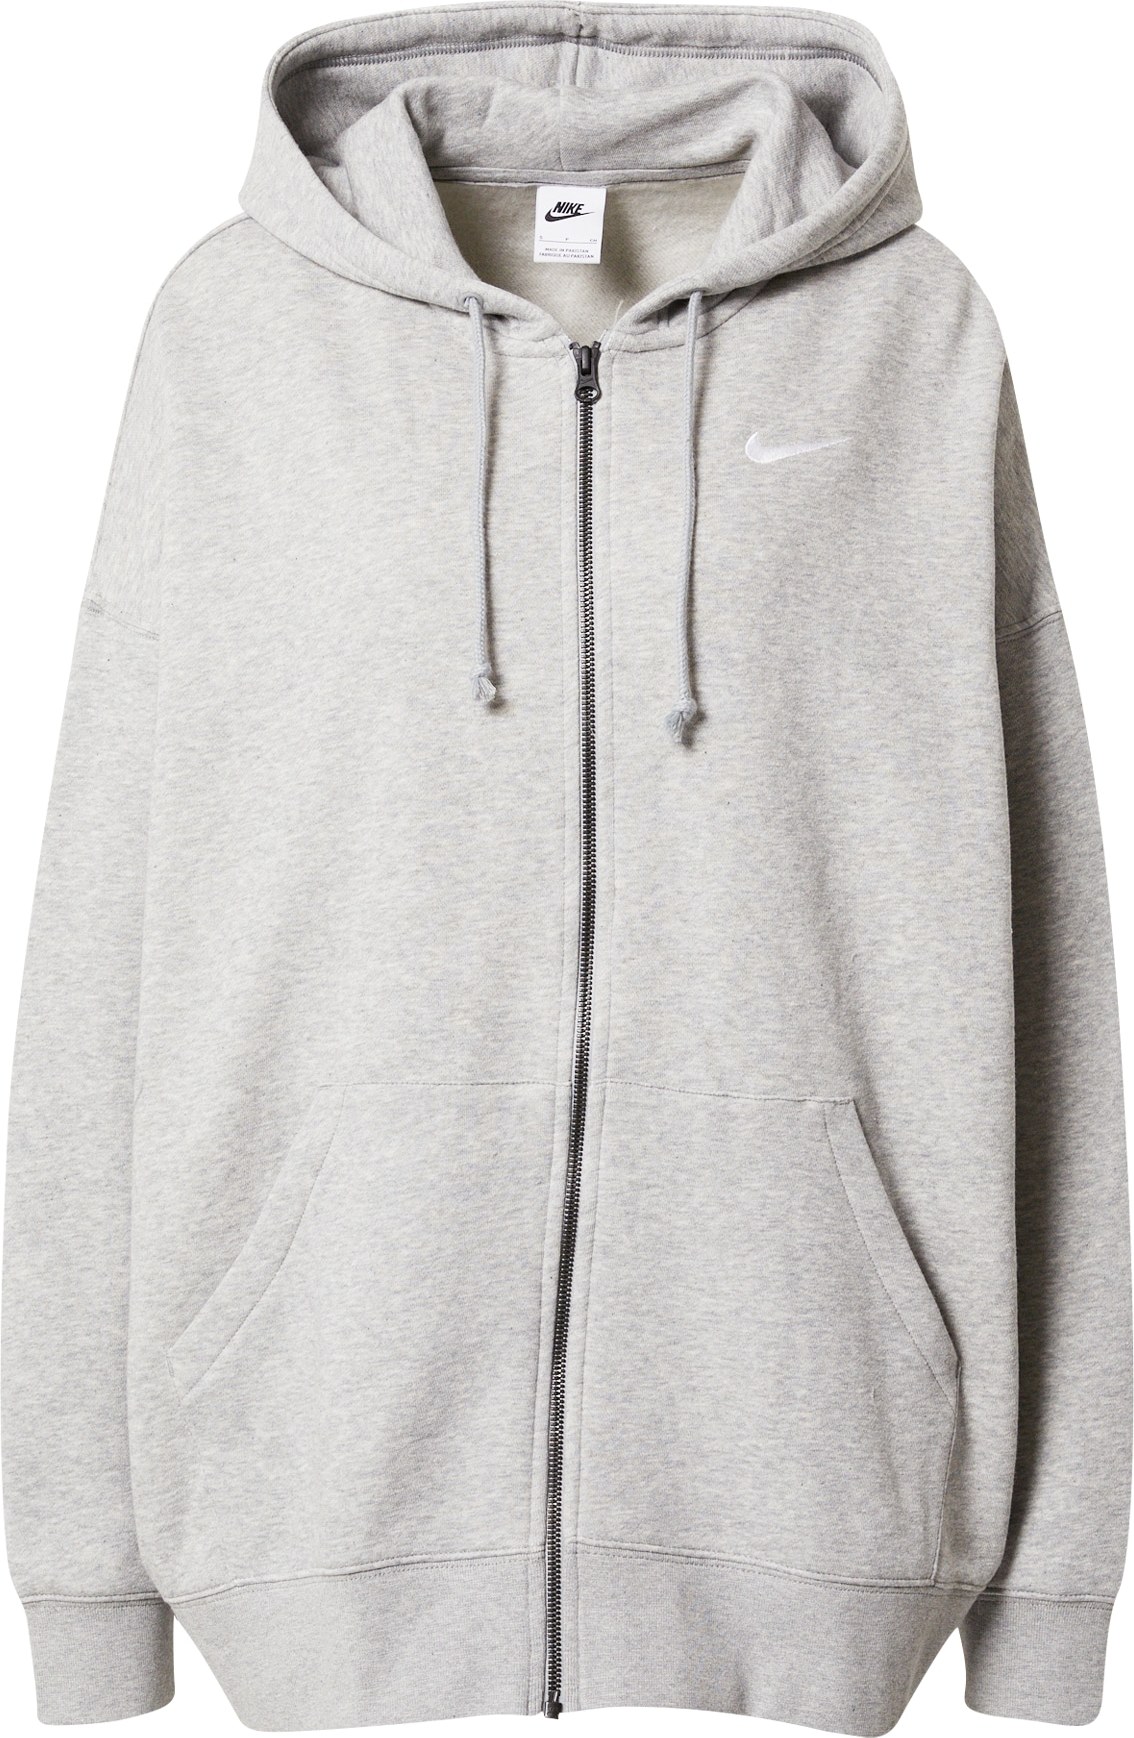 Nike Sportswear Mikina s kapucí světle šedá / bílá